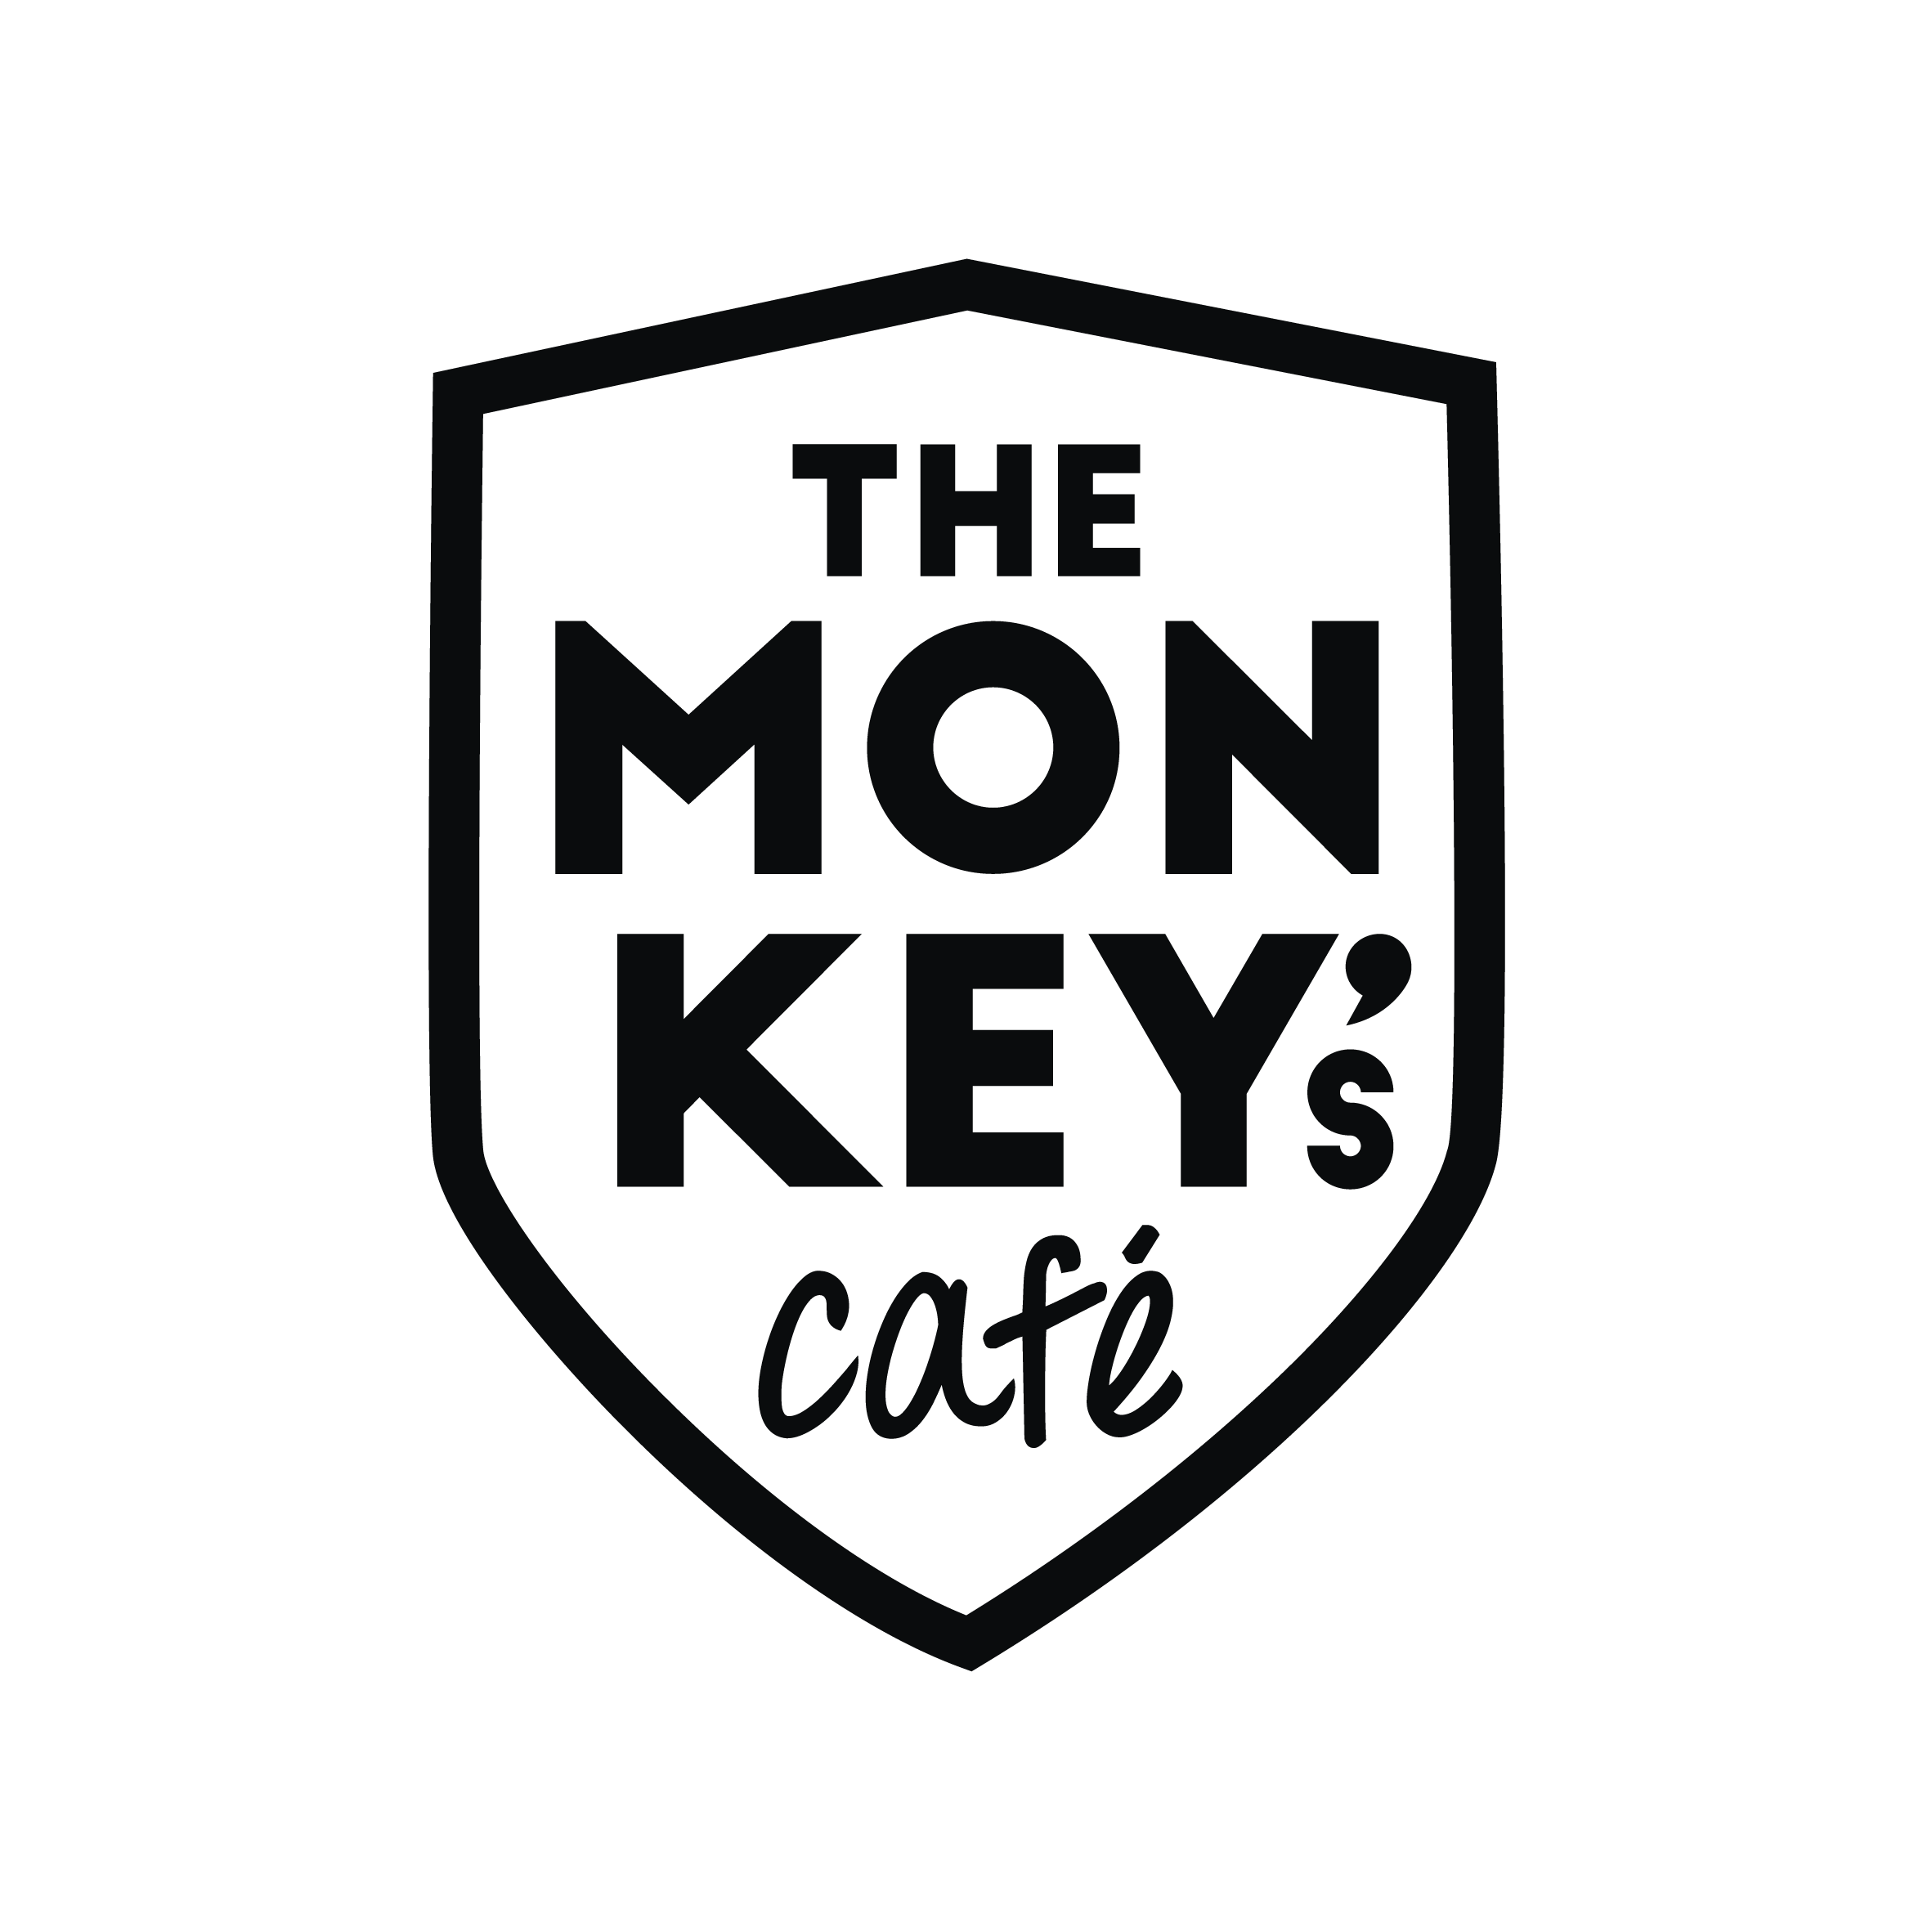 The Monkey's Café